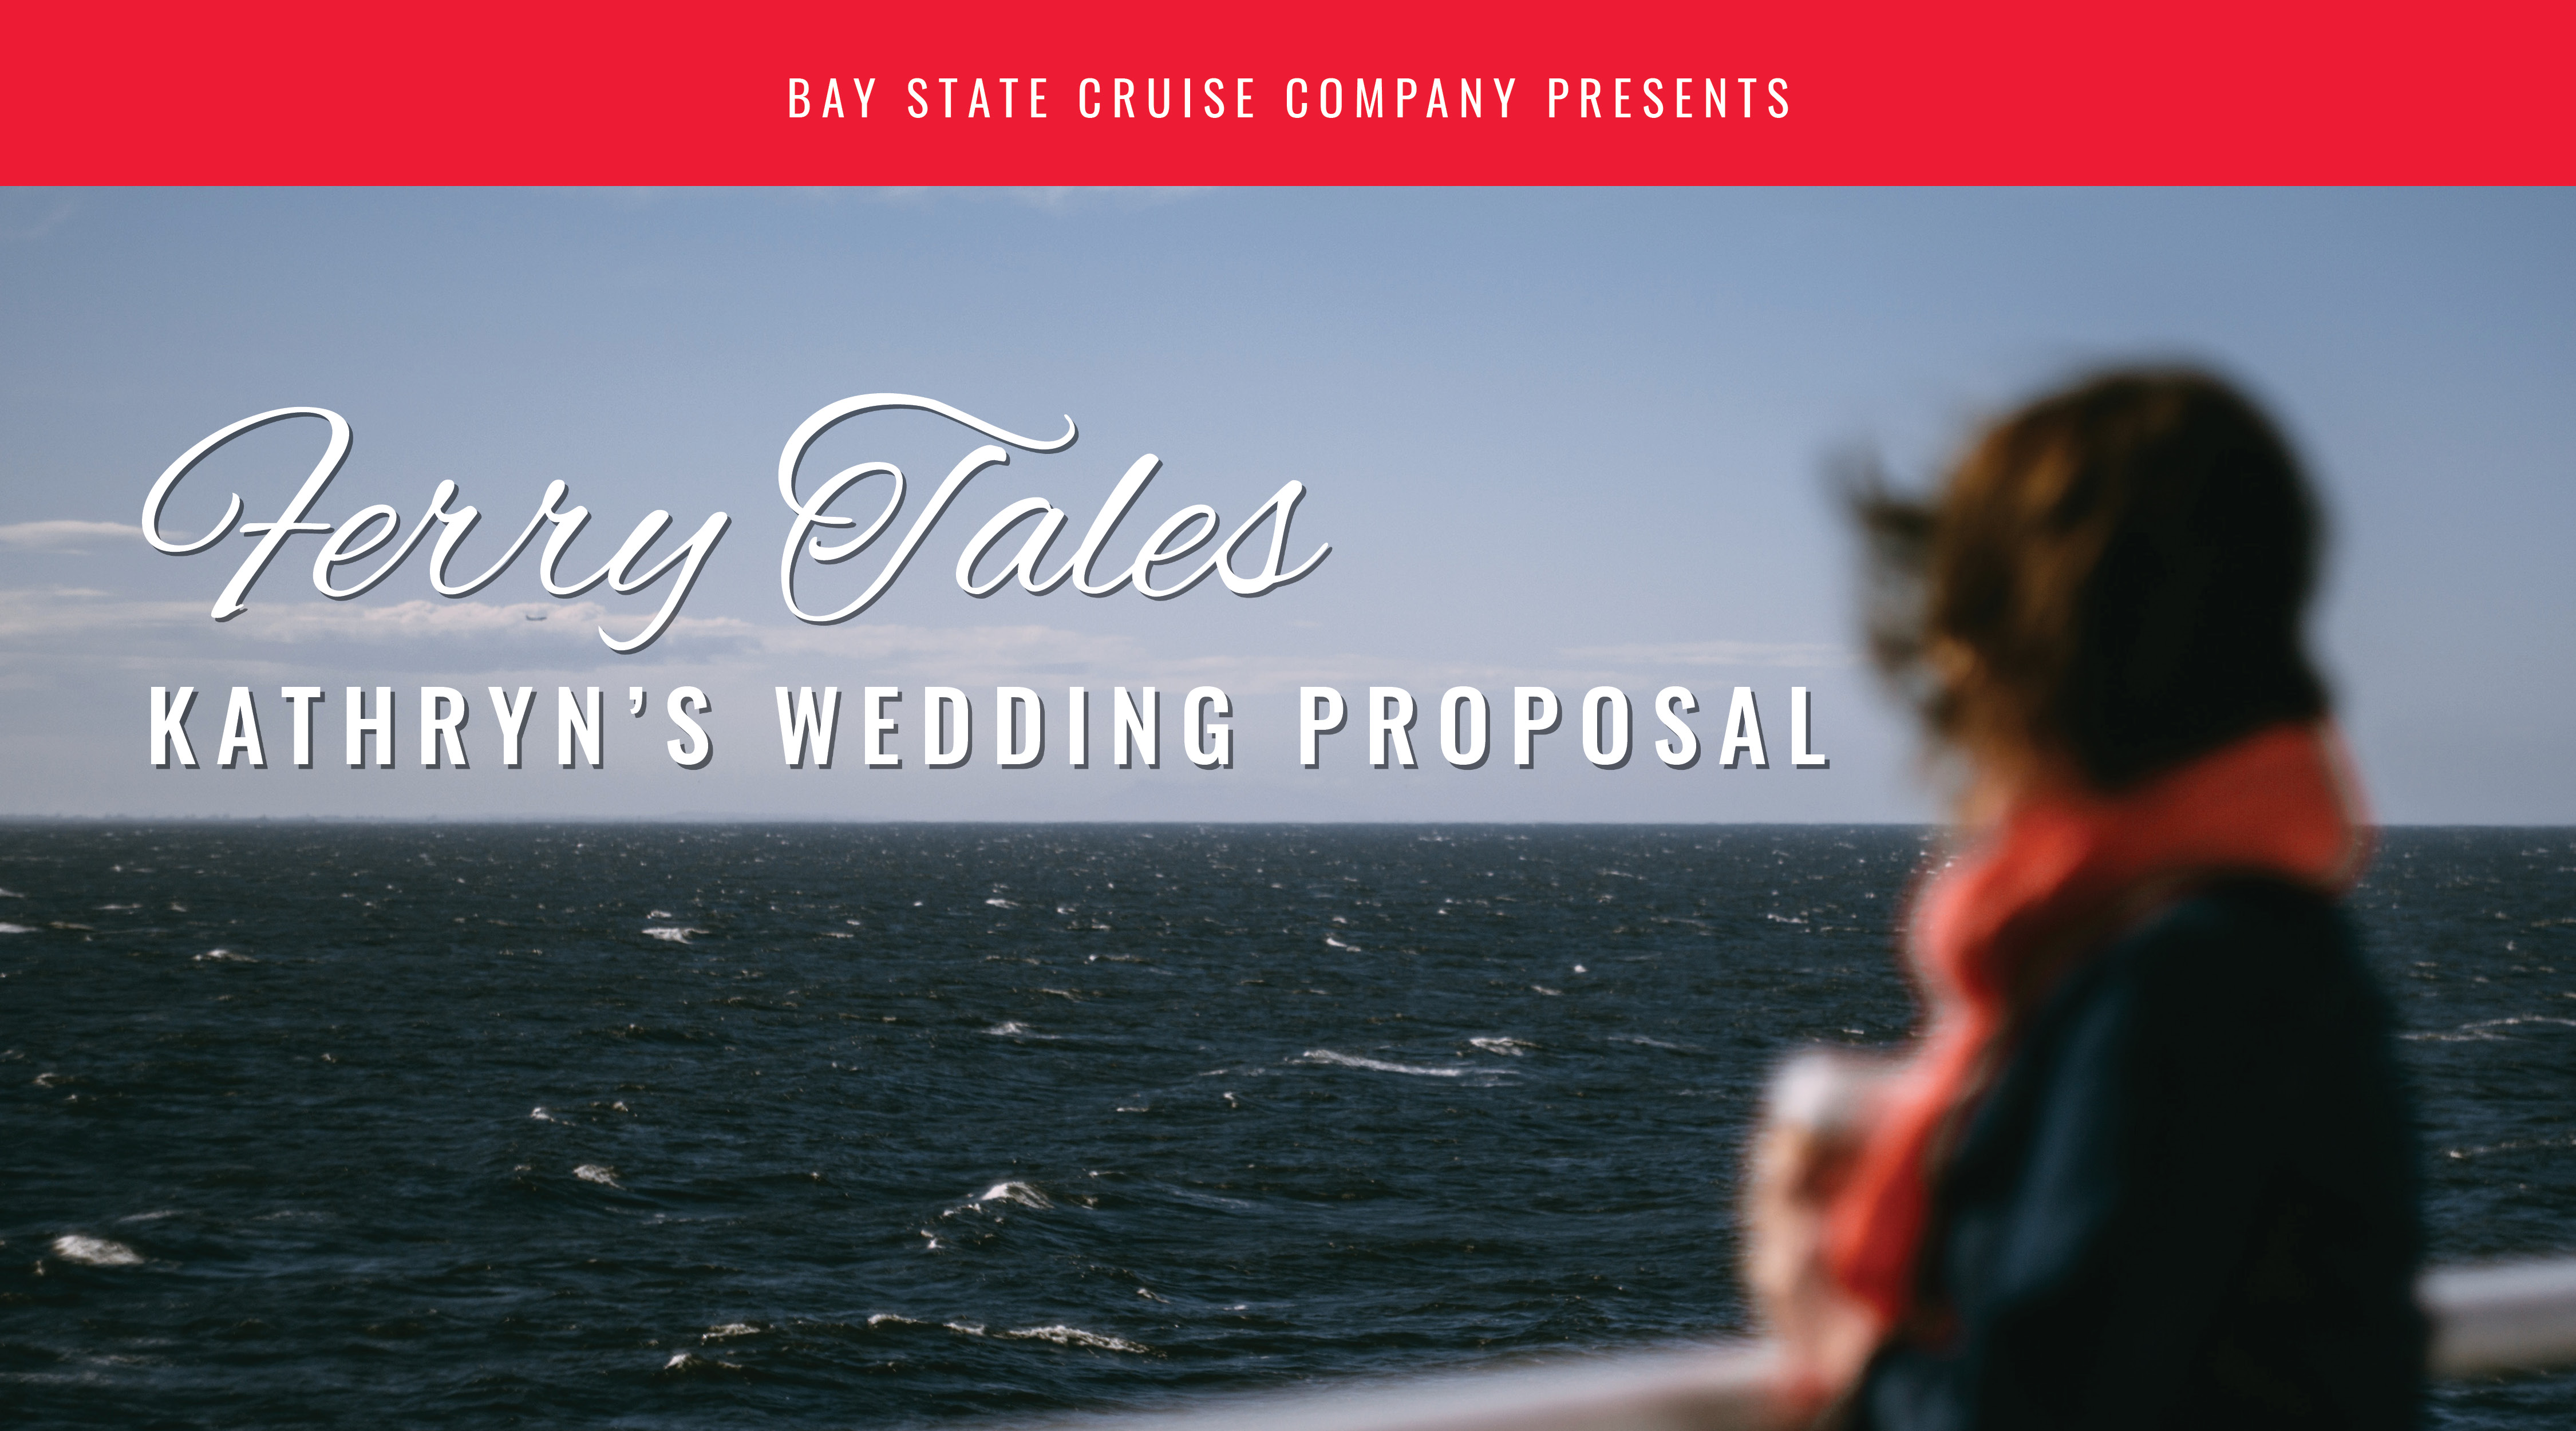 Kathryn's Wedding Proposal